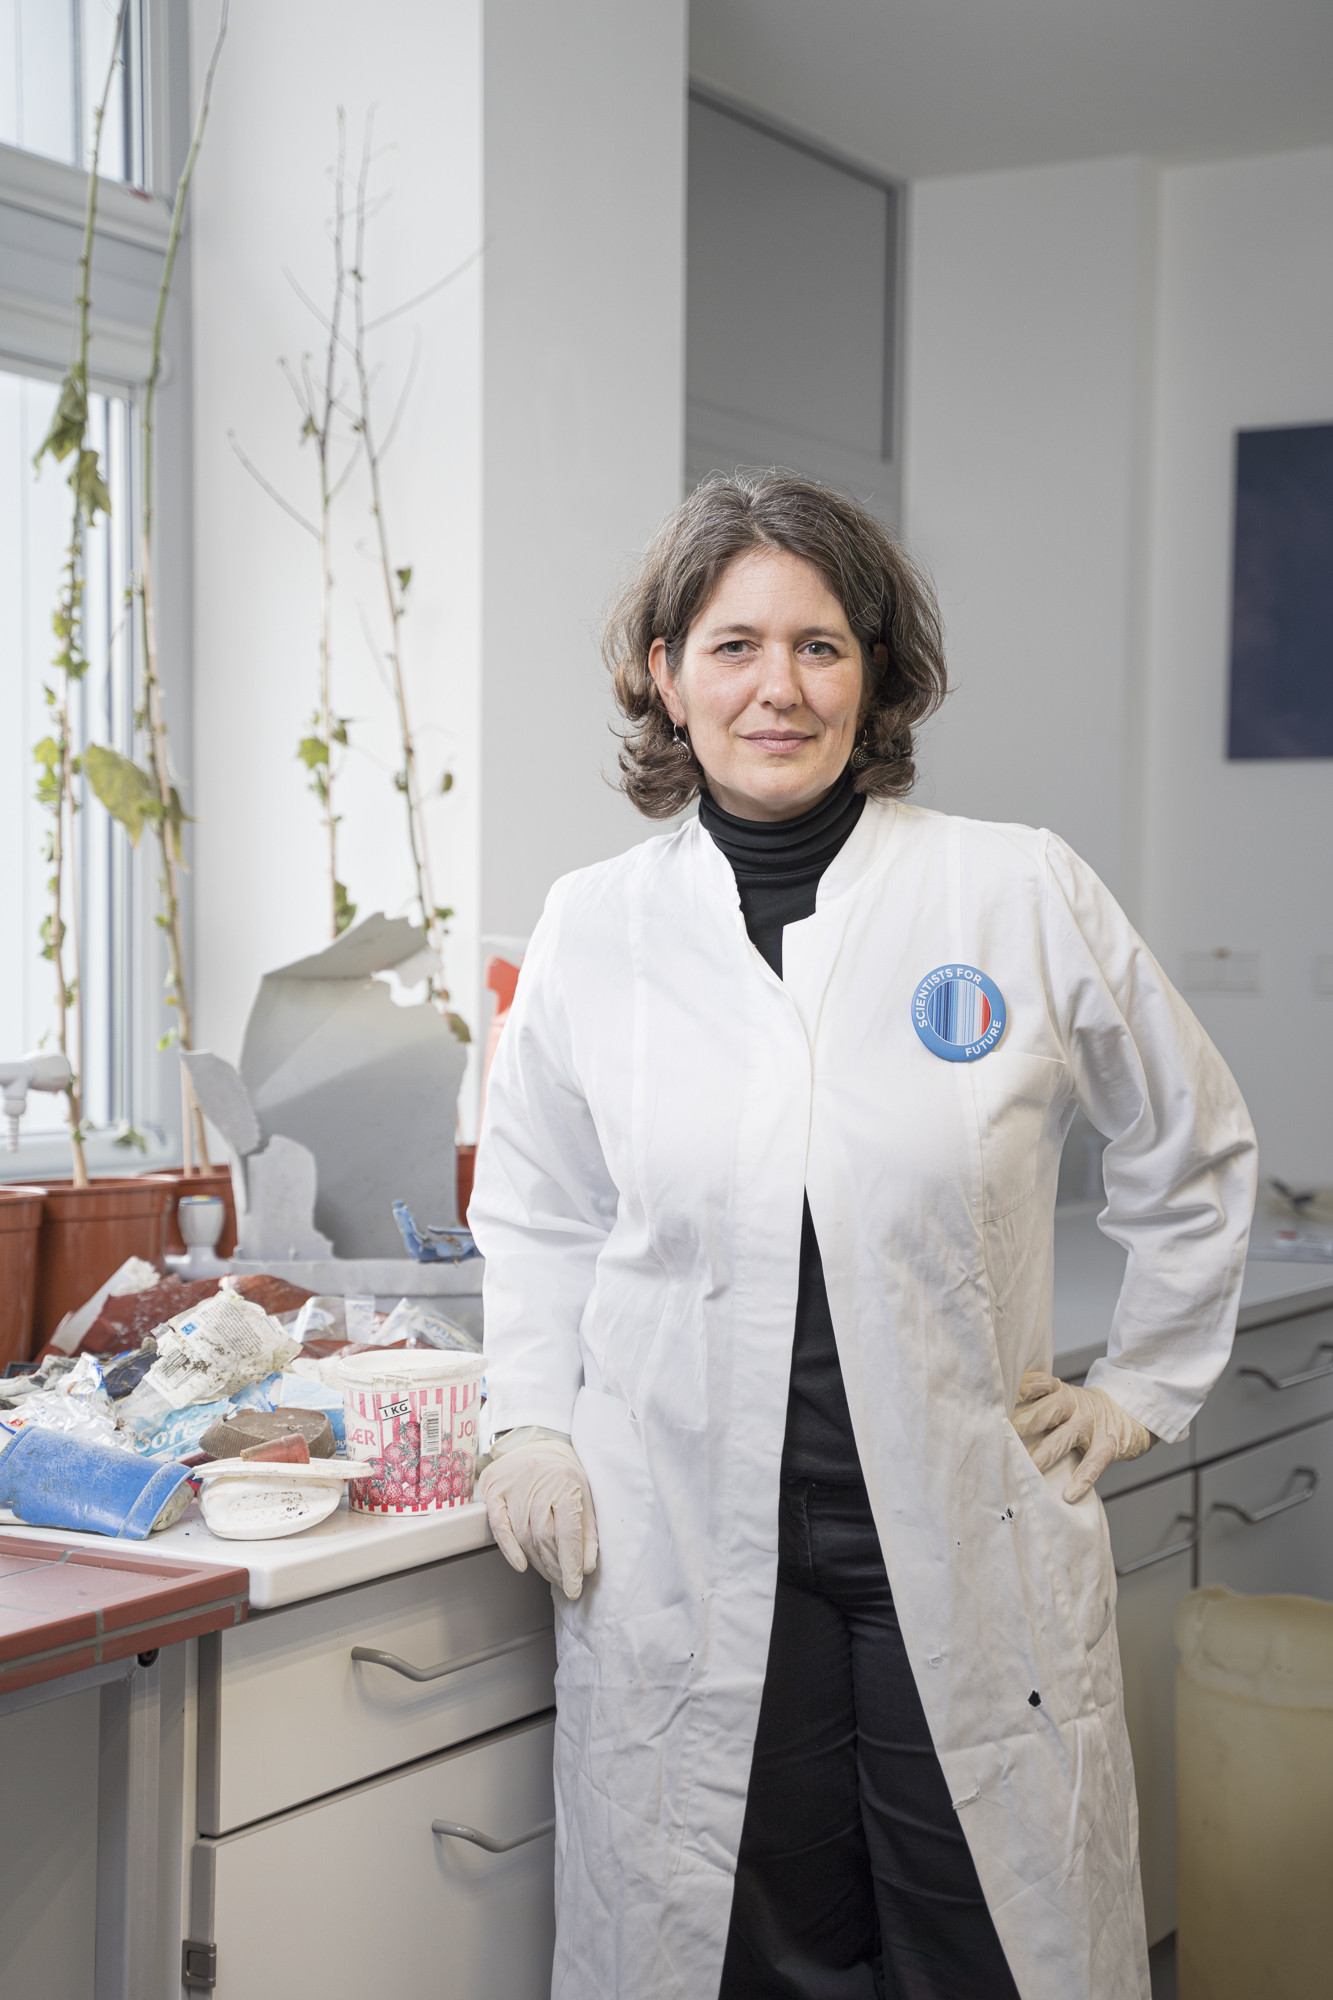 Wissenschaftlerin Melanie Bergmann in weißem Kittel vor einer Ablage mit Plastikmüll